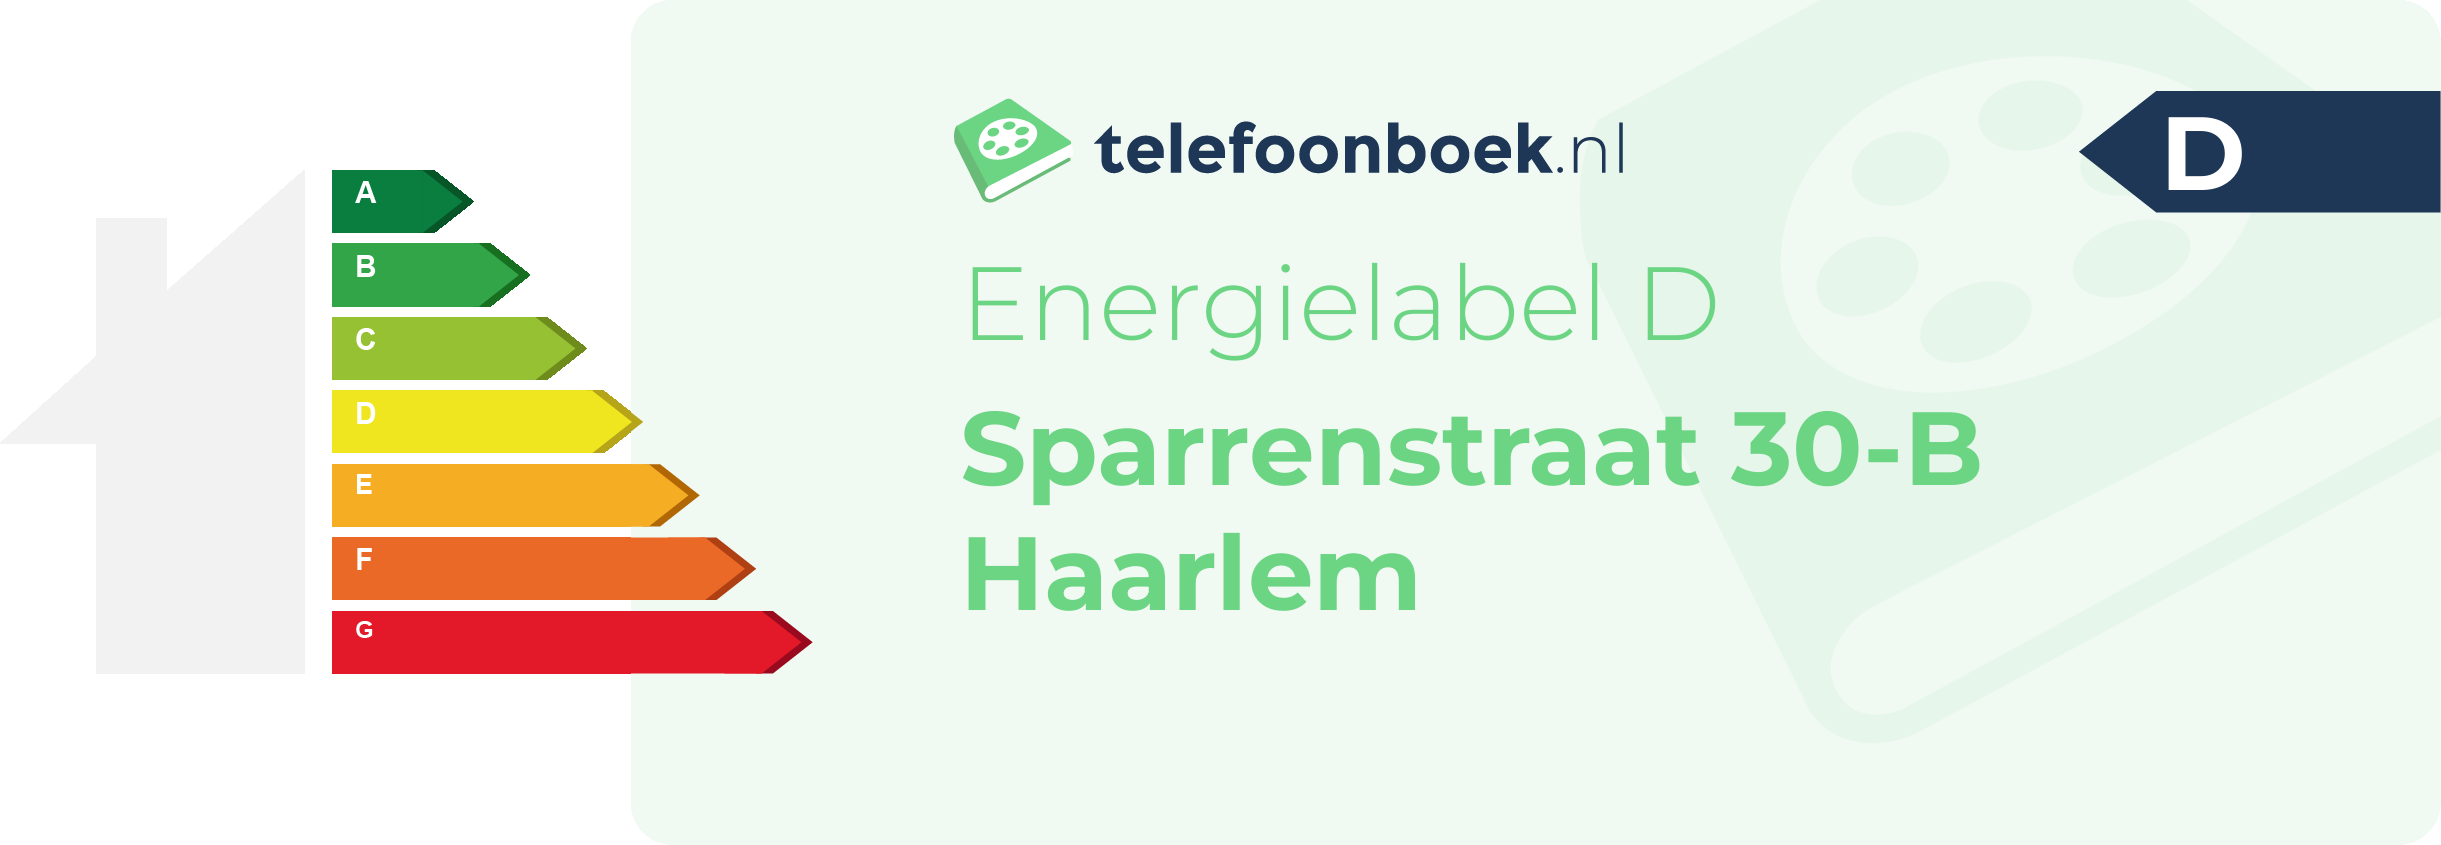 Energielabel Sparrenstraat 30-B Haarlem